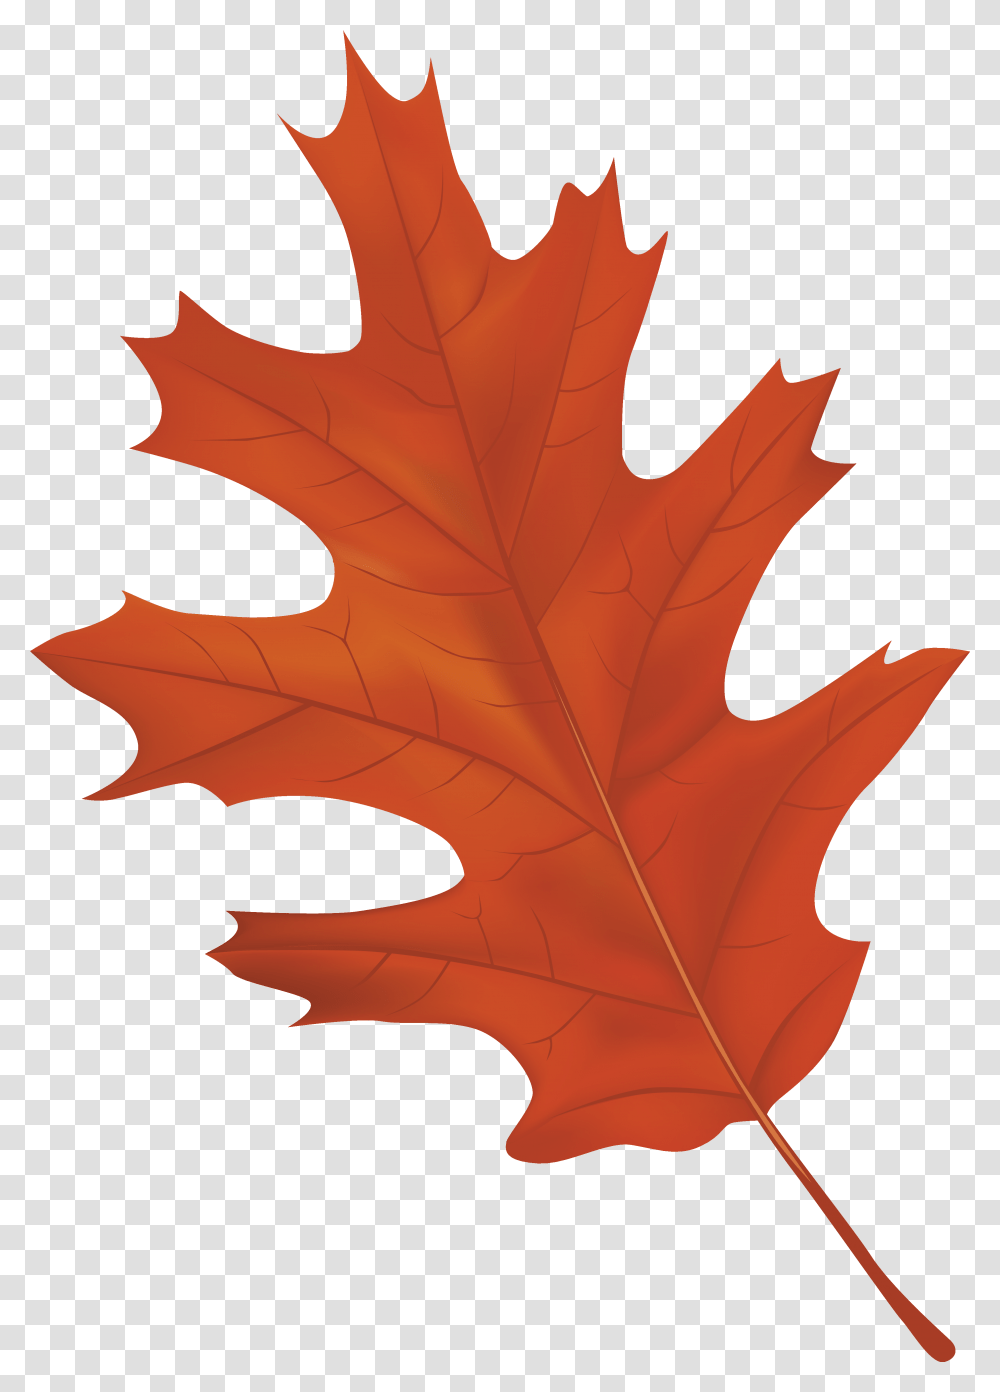 Autumn Leaf Clipart Autumn Leaf Clipart, Plant, Tree, Maple, Maple Leaf Transparent Png